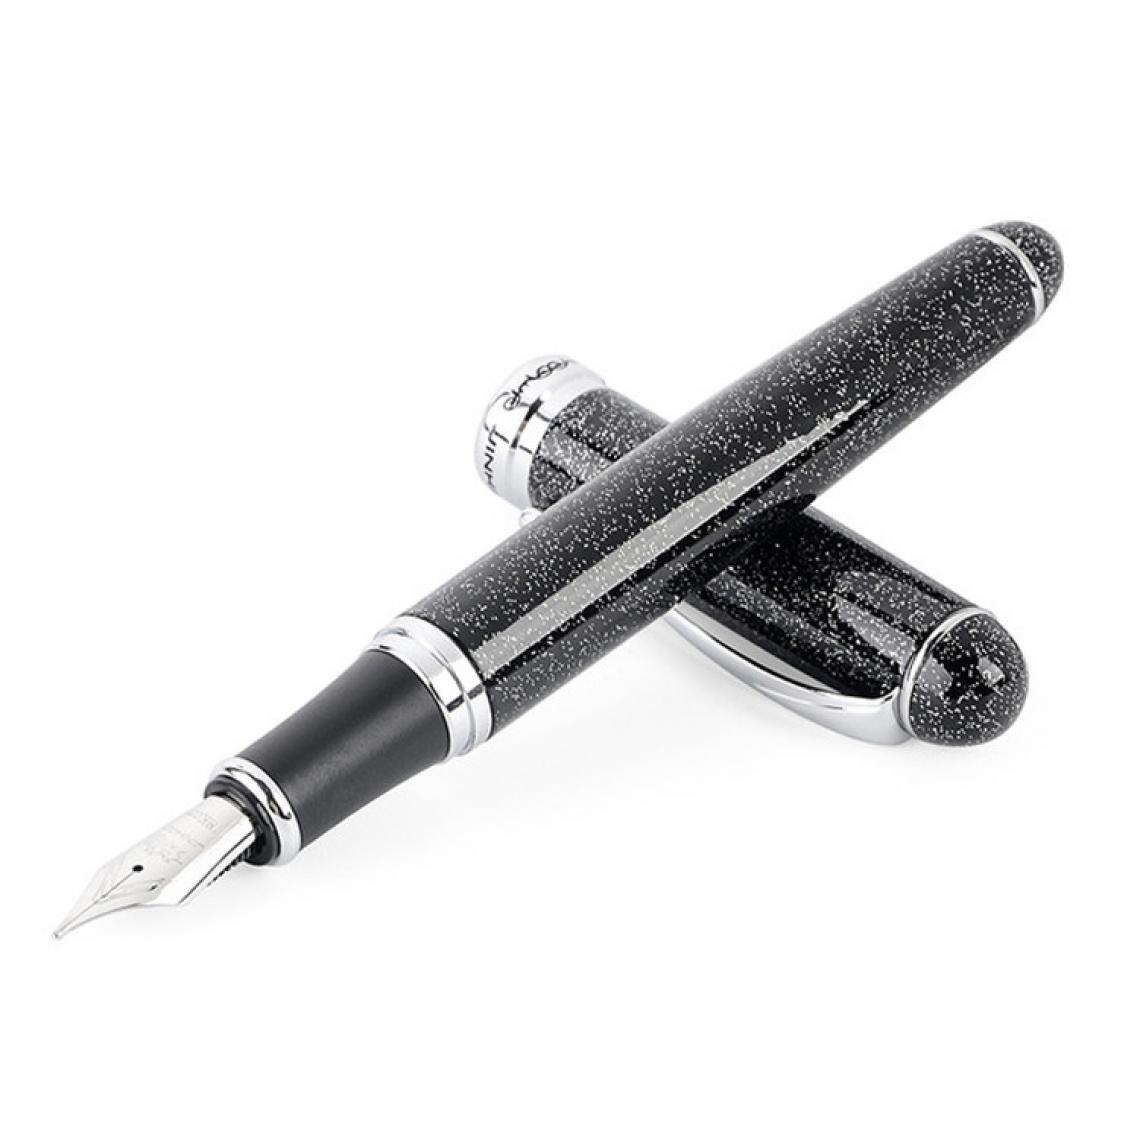 Wewoo - X750 papeterie stylo-plume en acier inoxydable plume moyenne stylos encre cadeau école cadeautaille 1.0mm noir fluorescent - Accessoires Bureau